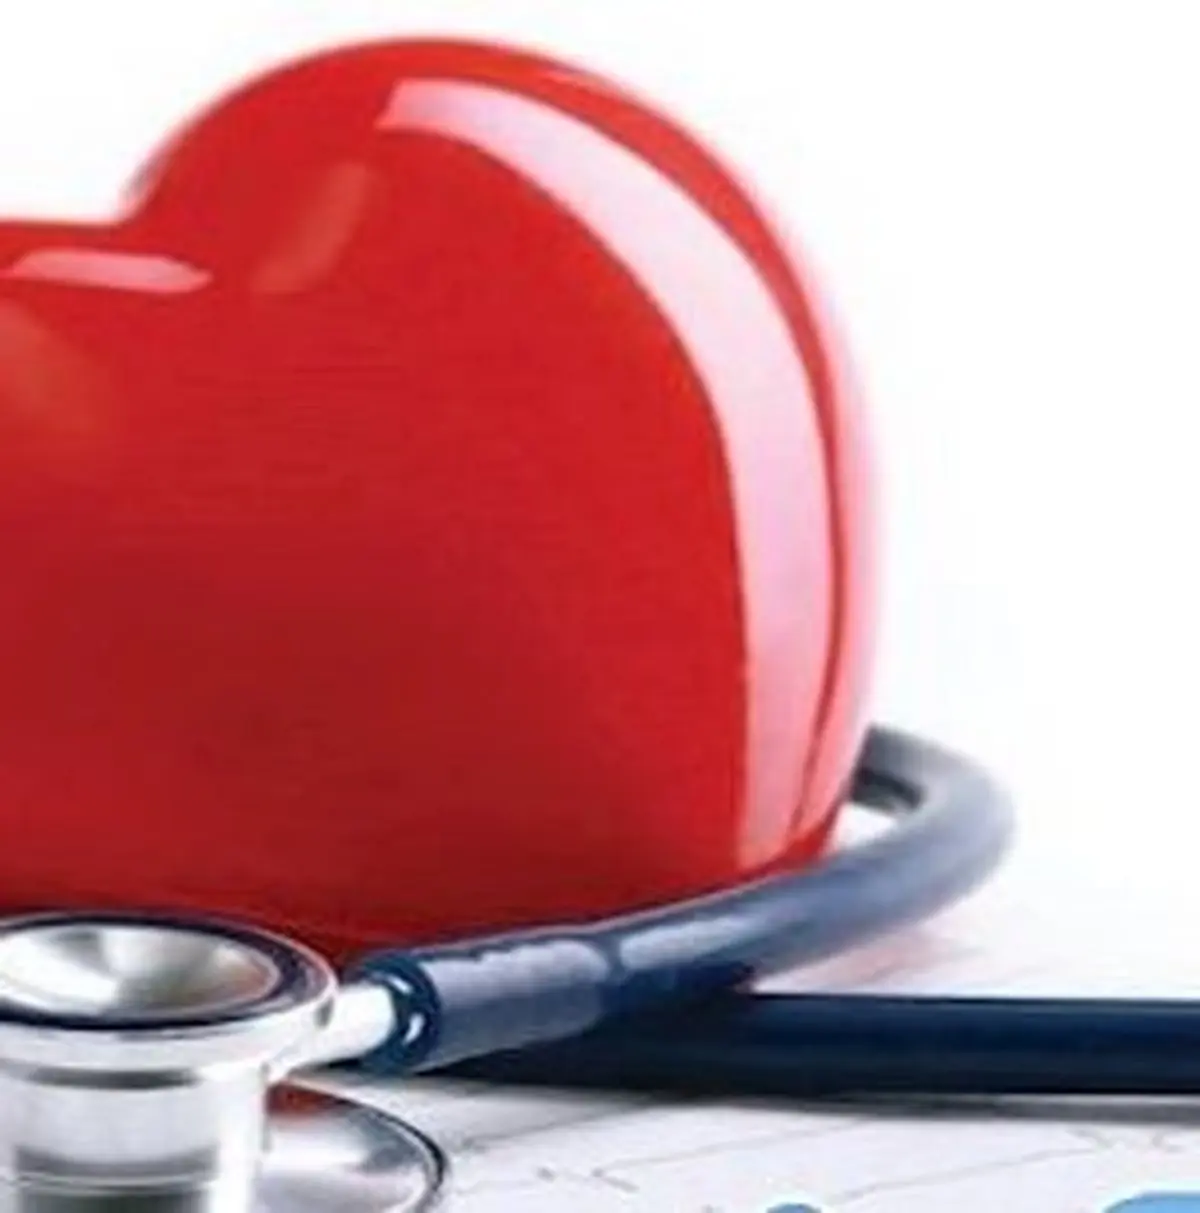 سلامت قلب با کلم بروکلی/ عسل و تسکین سرفه های سرماخوردگی